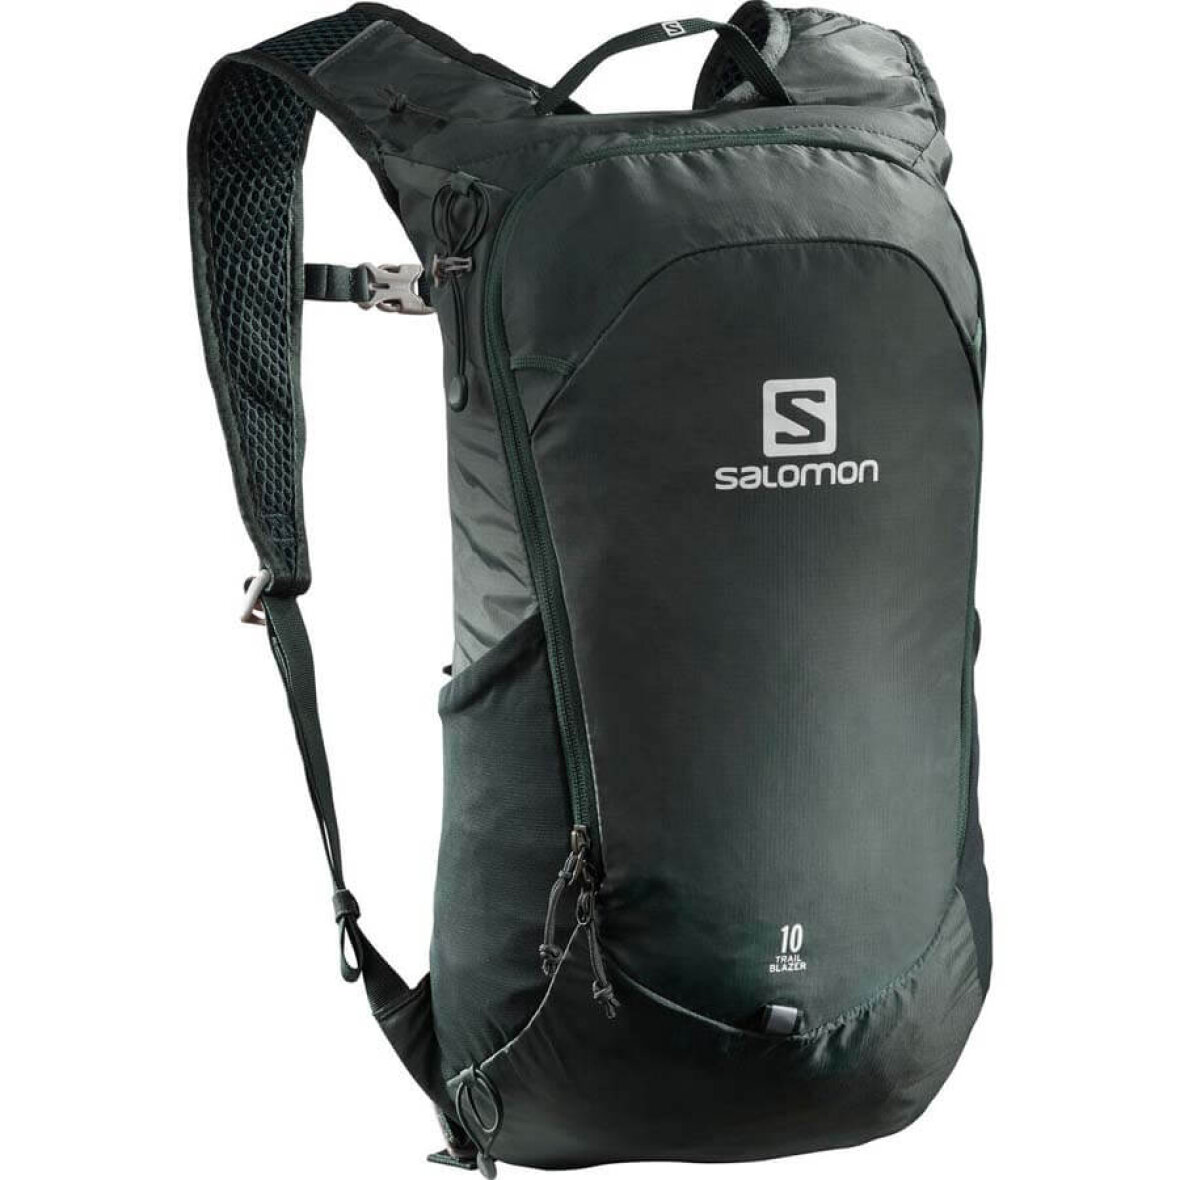 Salomon Trailblazer 10 - Let rygsæk til den aktive - Køb den her!